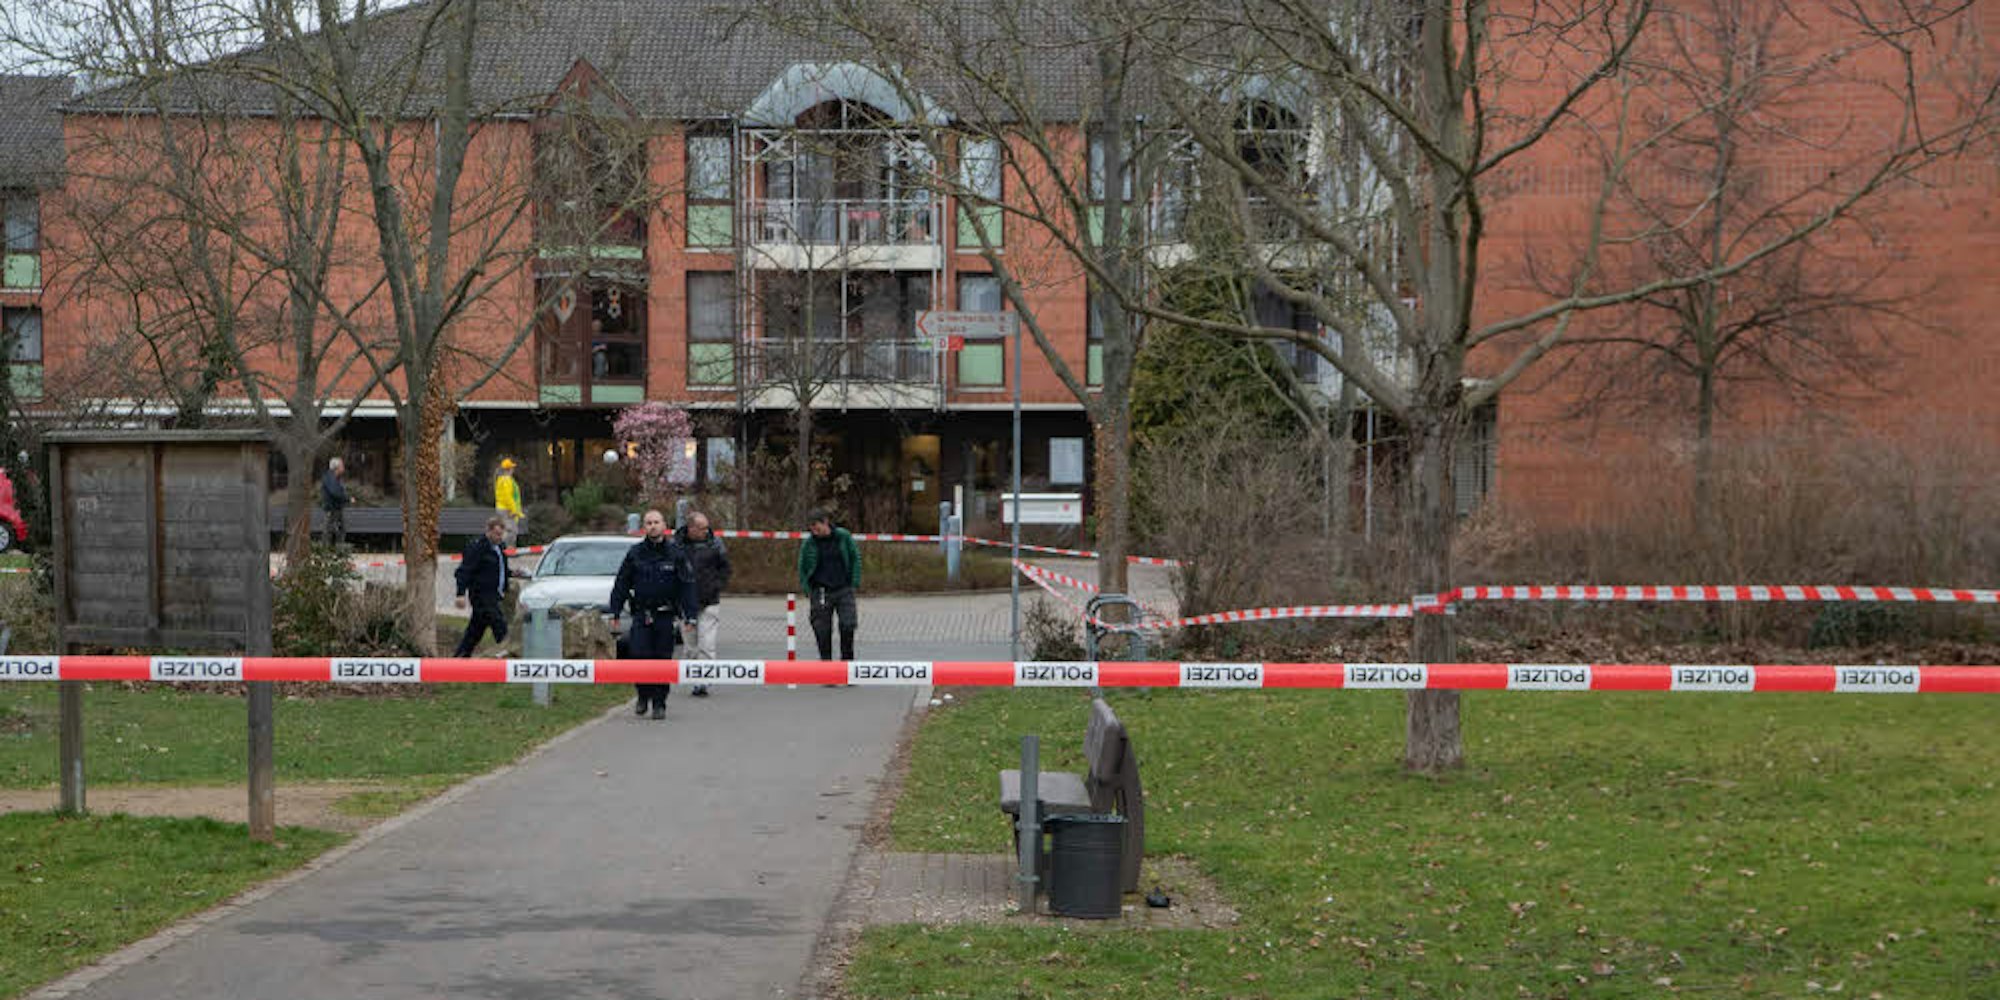 Teile des Ruhrparks wurden von der Polizei abgesperrt. Am Samstag hat es dort eine Messerattacke gegeben.